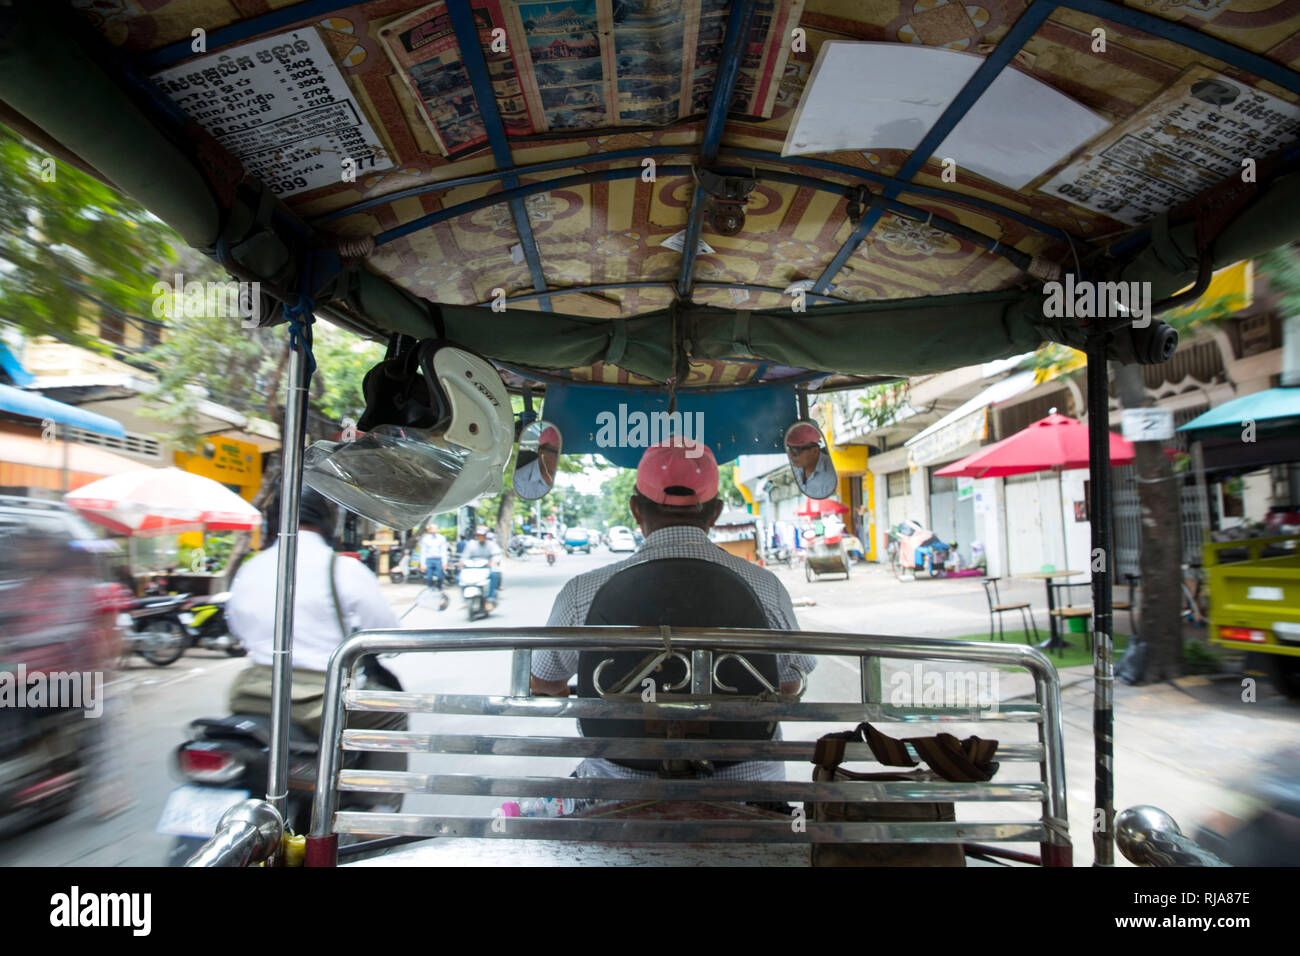 Kambodscha, Phnom Penh, Straßenszene, fahrt in einem Taxi Tuk Tuk Banque D'Images